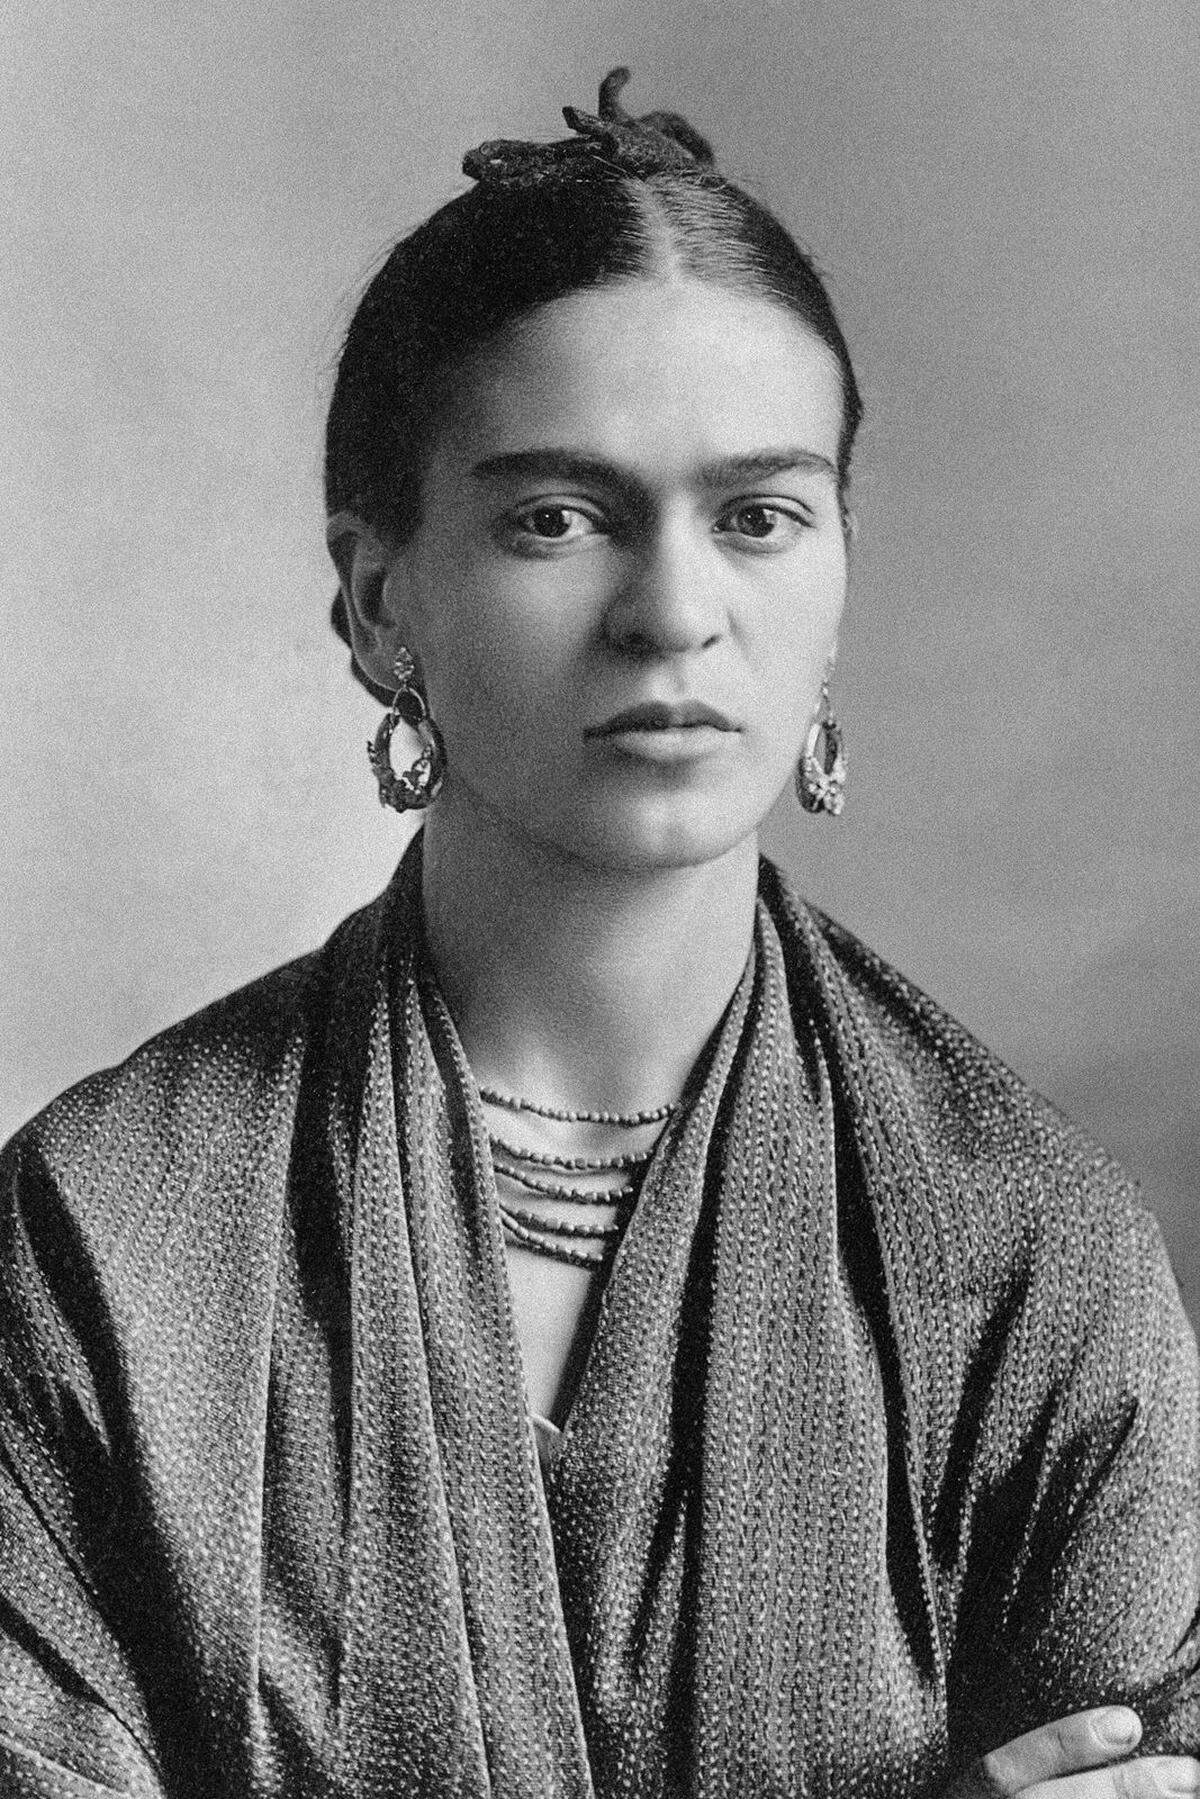 Hier das Vorbild, die Künstlerin Frida Kahlo.